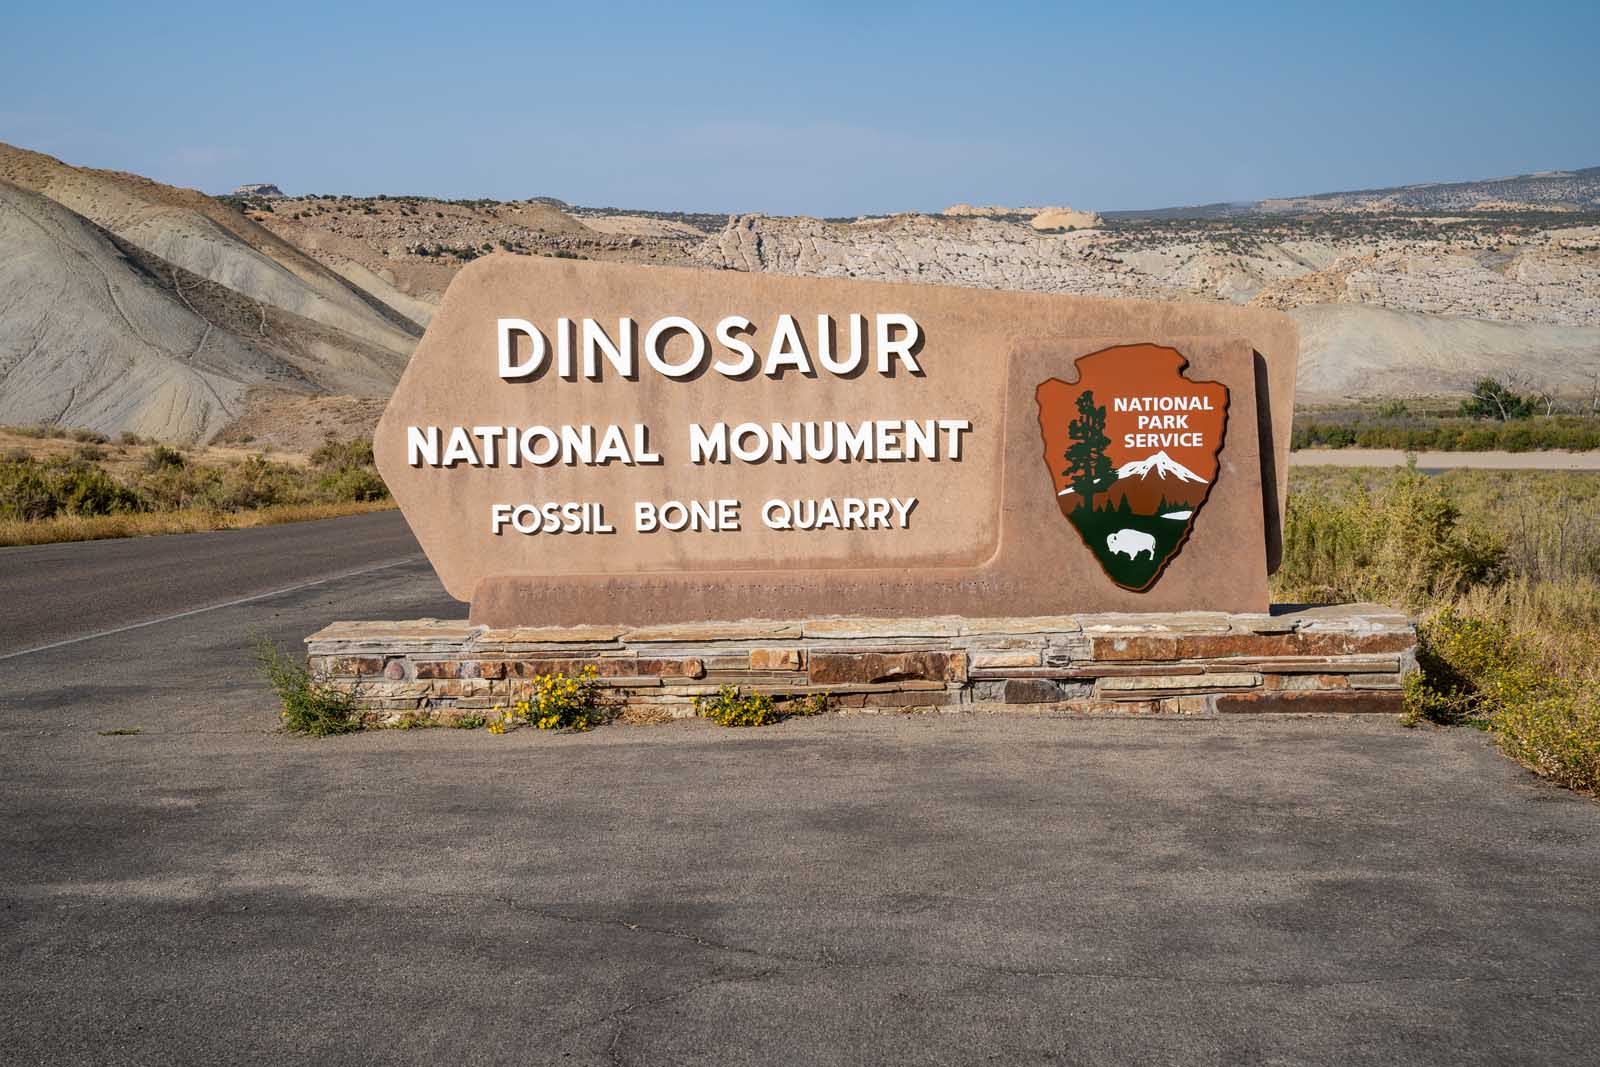 Los mejores monumentos nacionales de Colorado Dinosaur National Monument